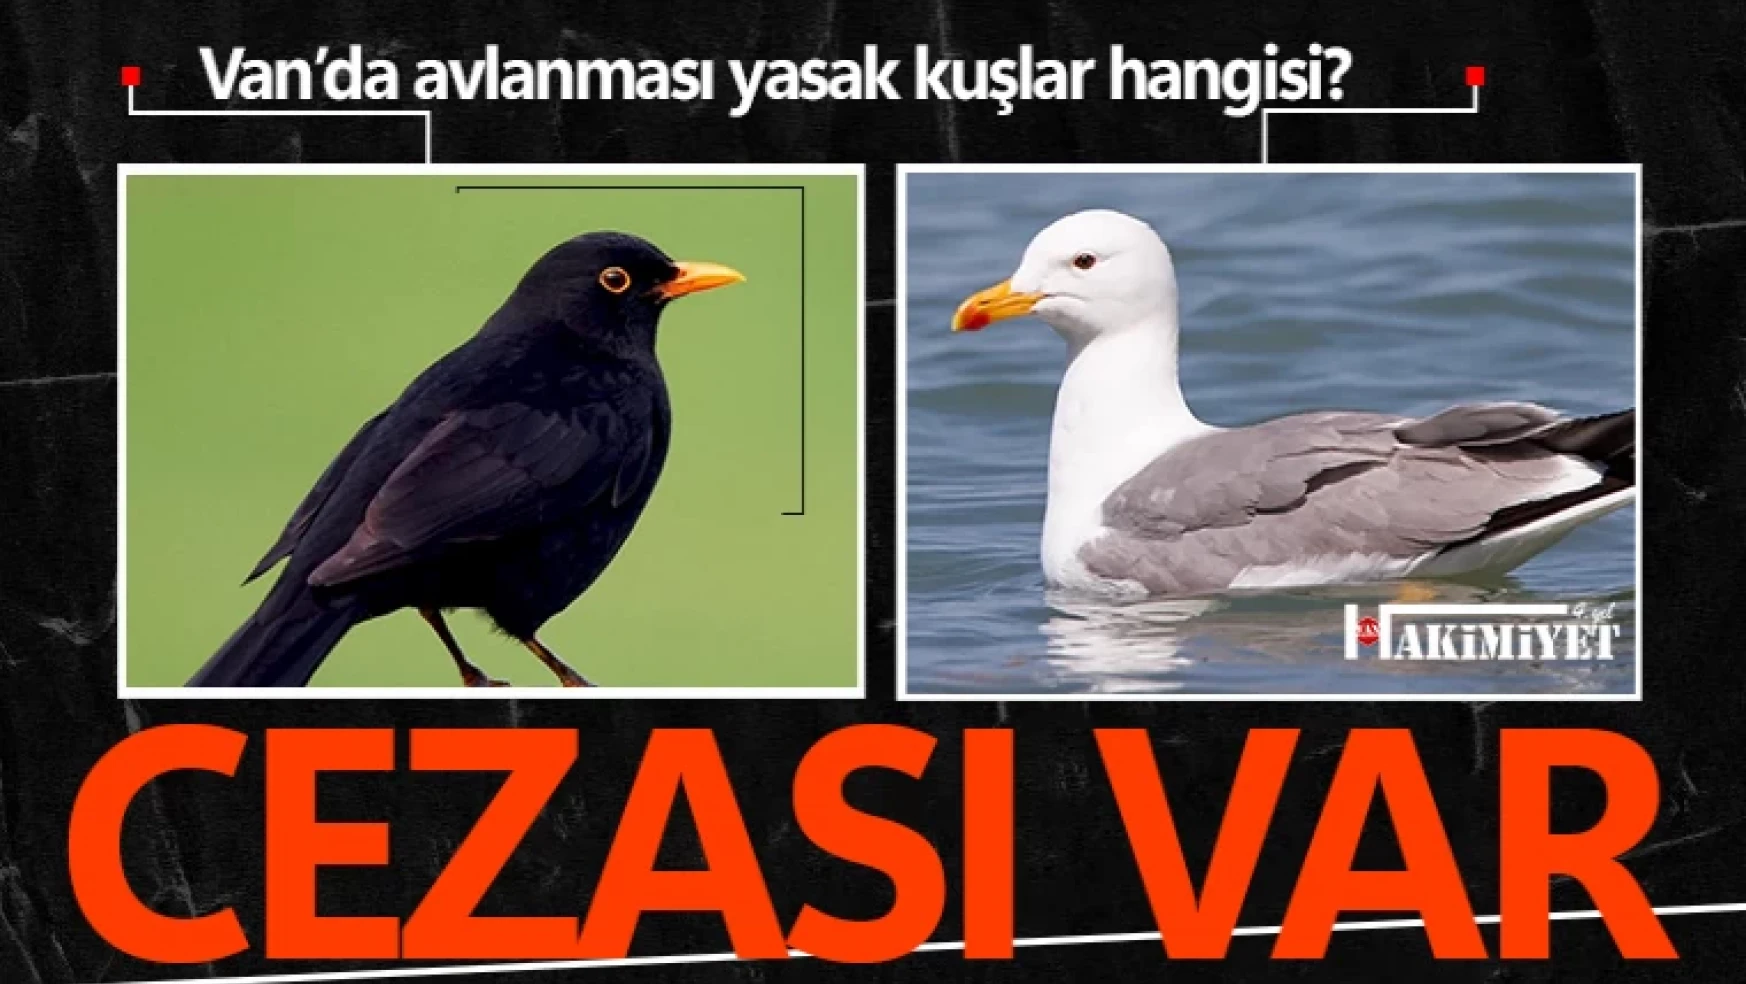 Van'da av yasağı olan kuş türleri hangileri?